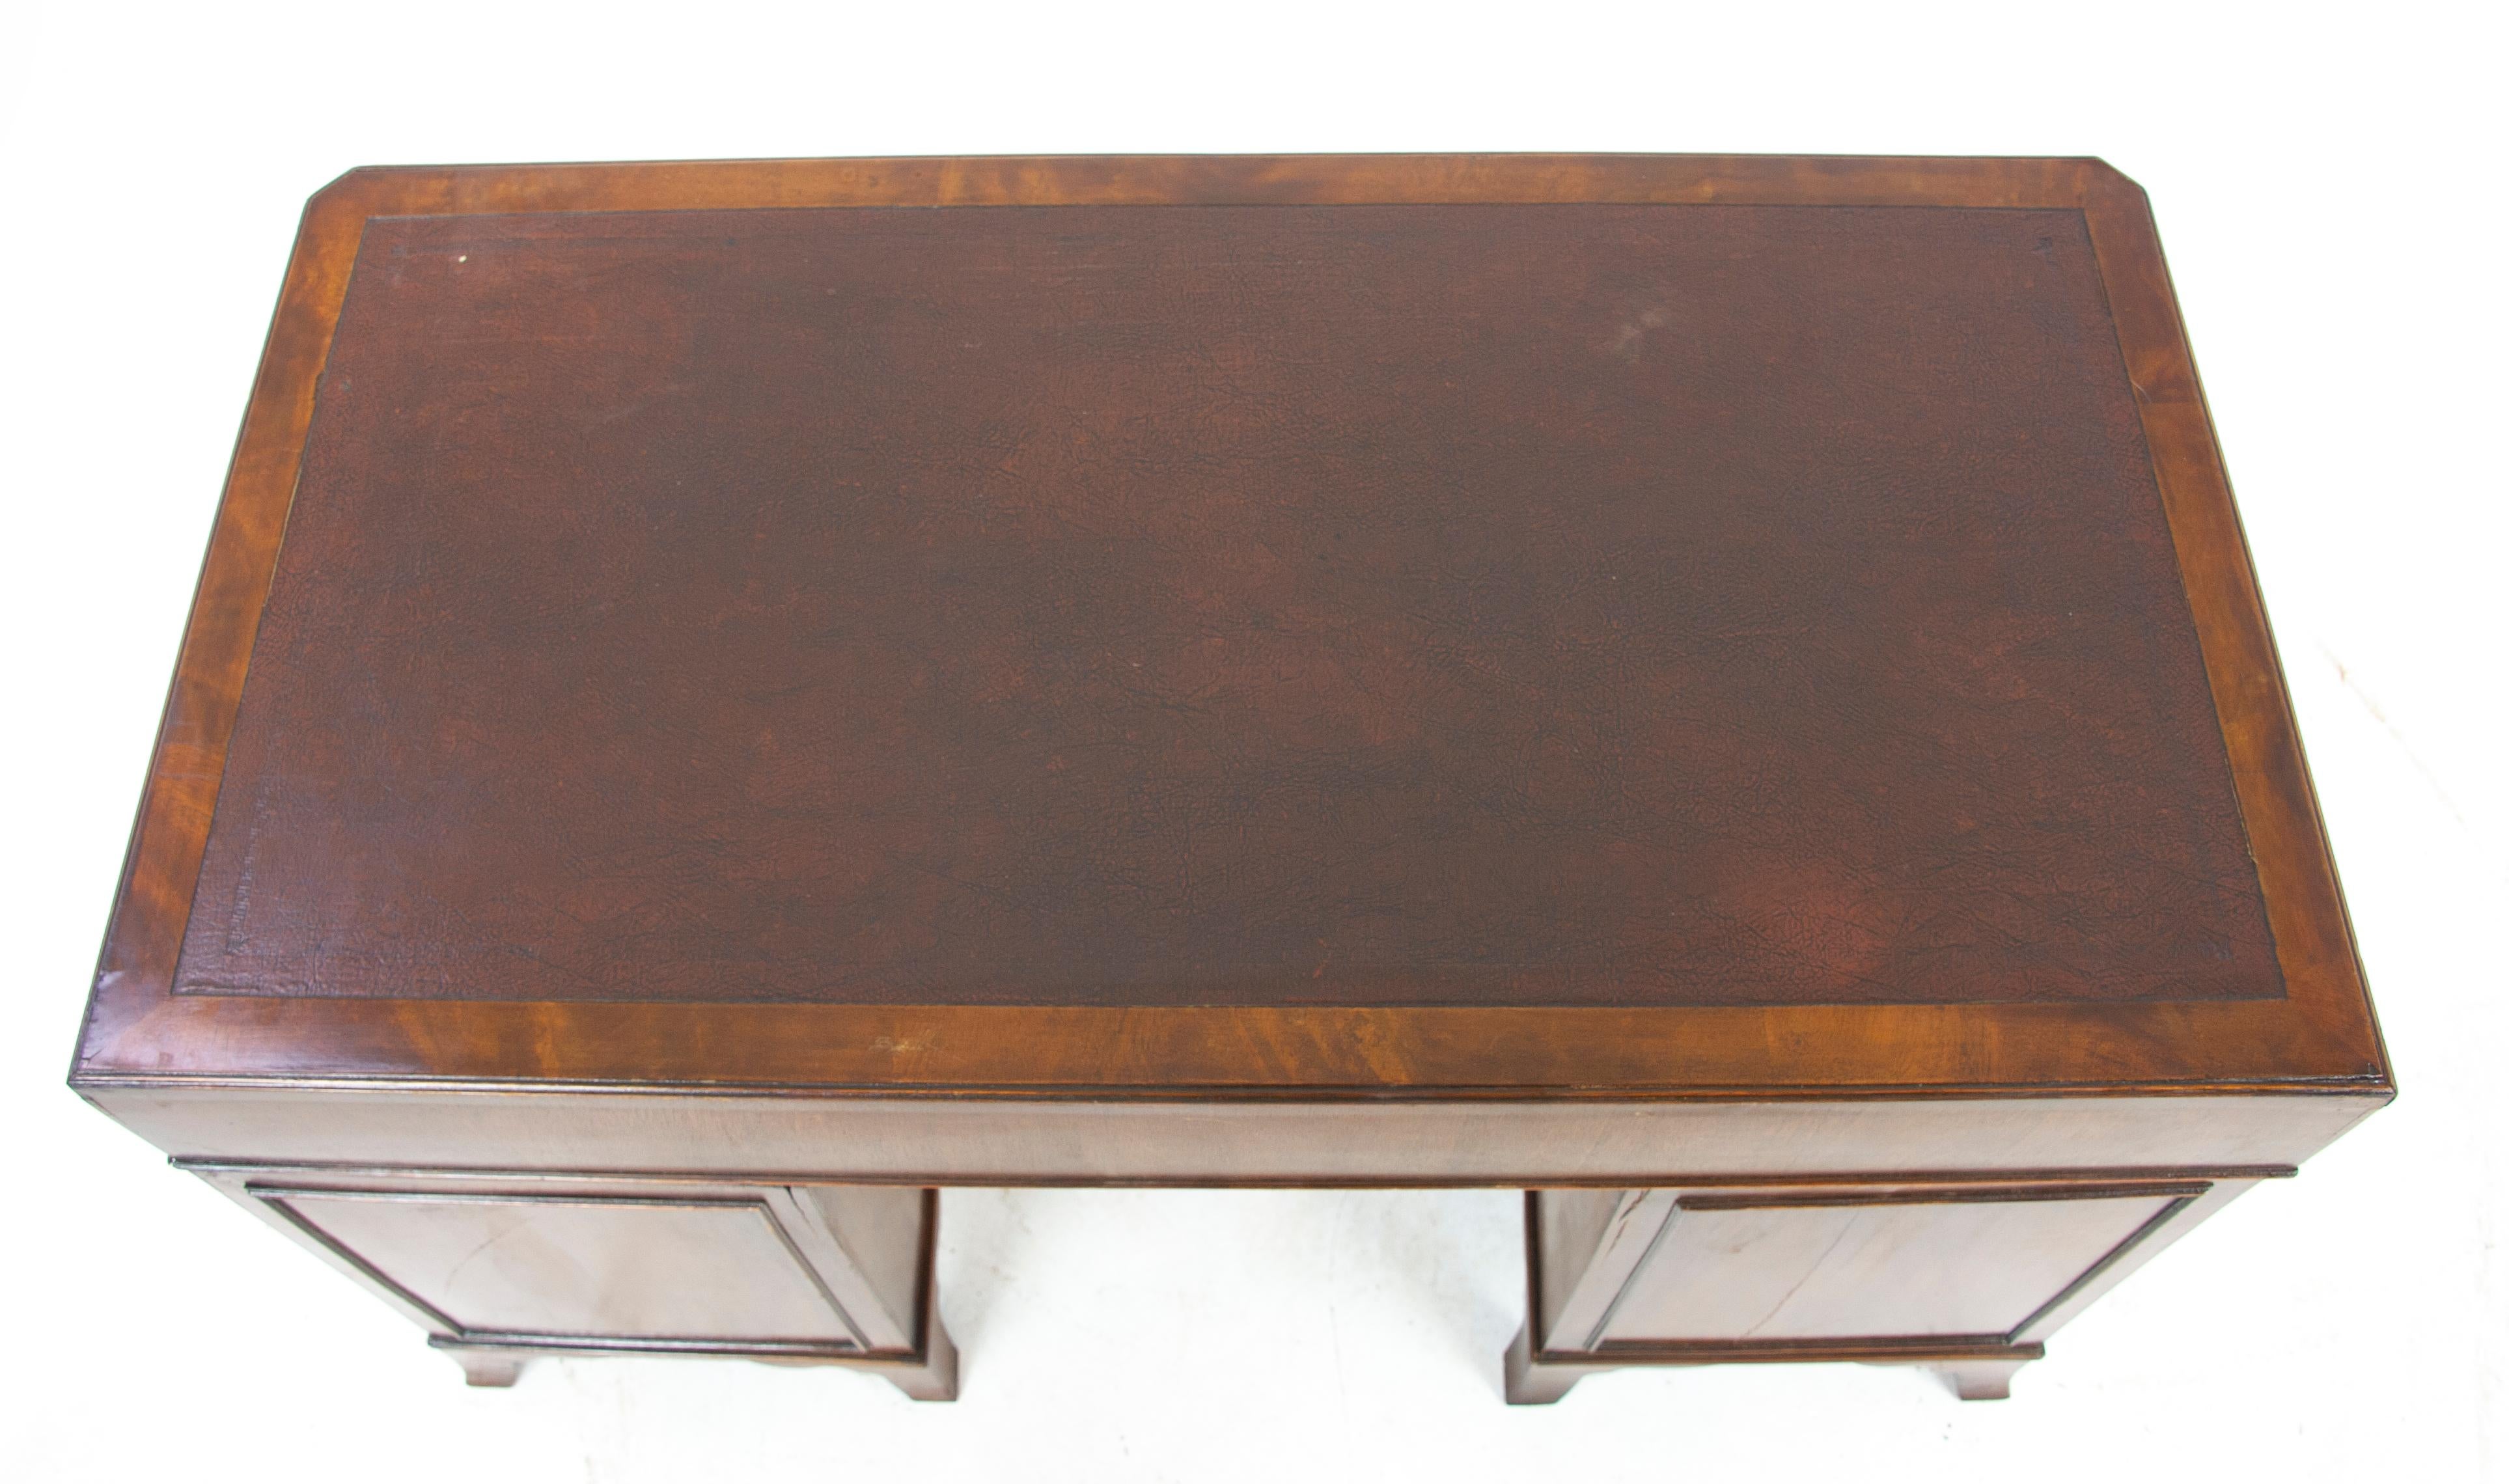 Double Pedestal Desk, Walnut Desk, Leather Top, Scotland, 1920, Antiques, B1283 3